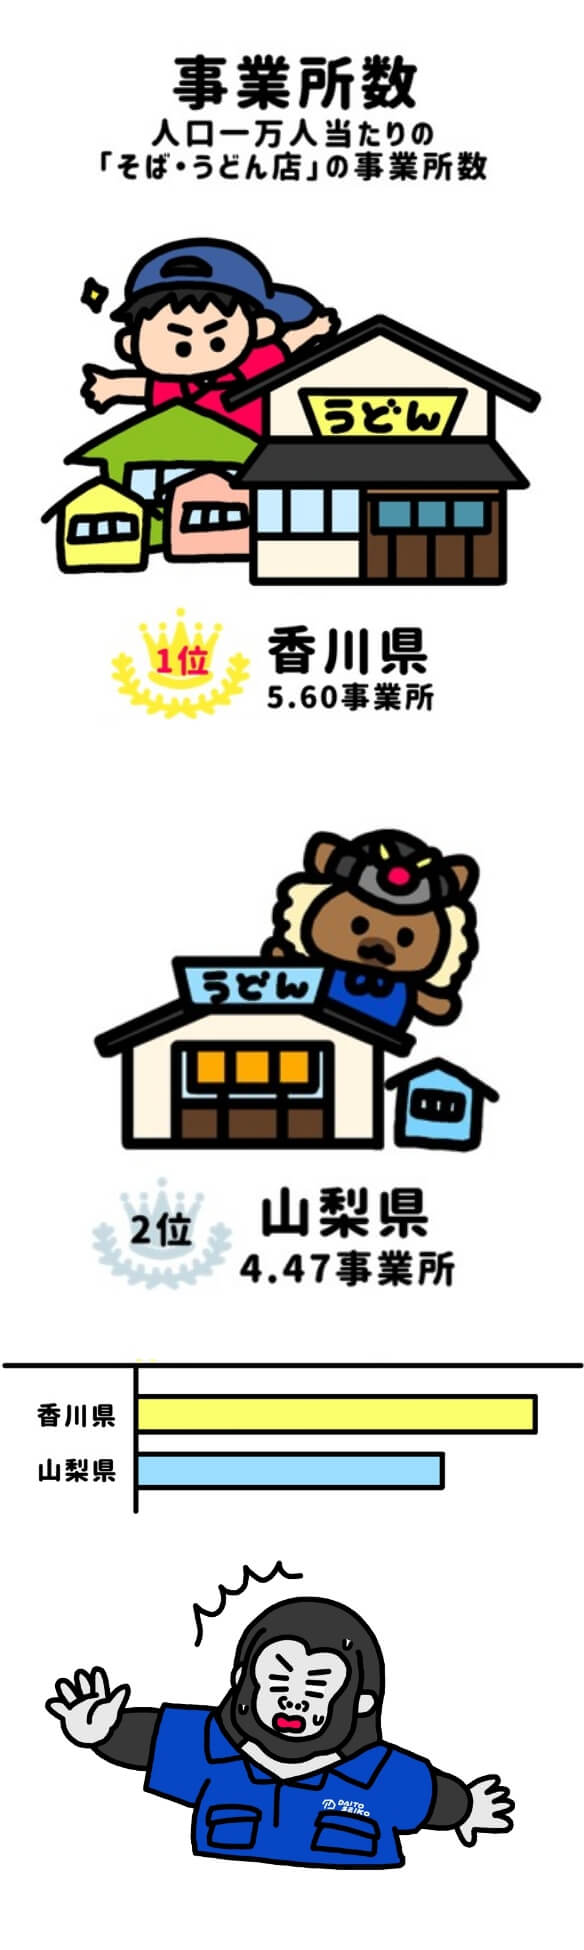 人口一万人当たりのそば・うどん店の事業所数の1位は香川県